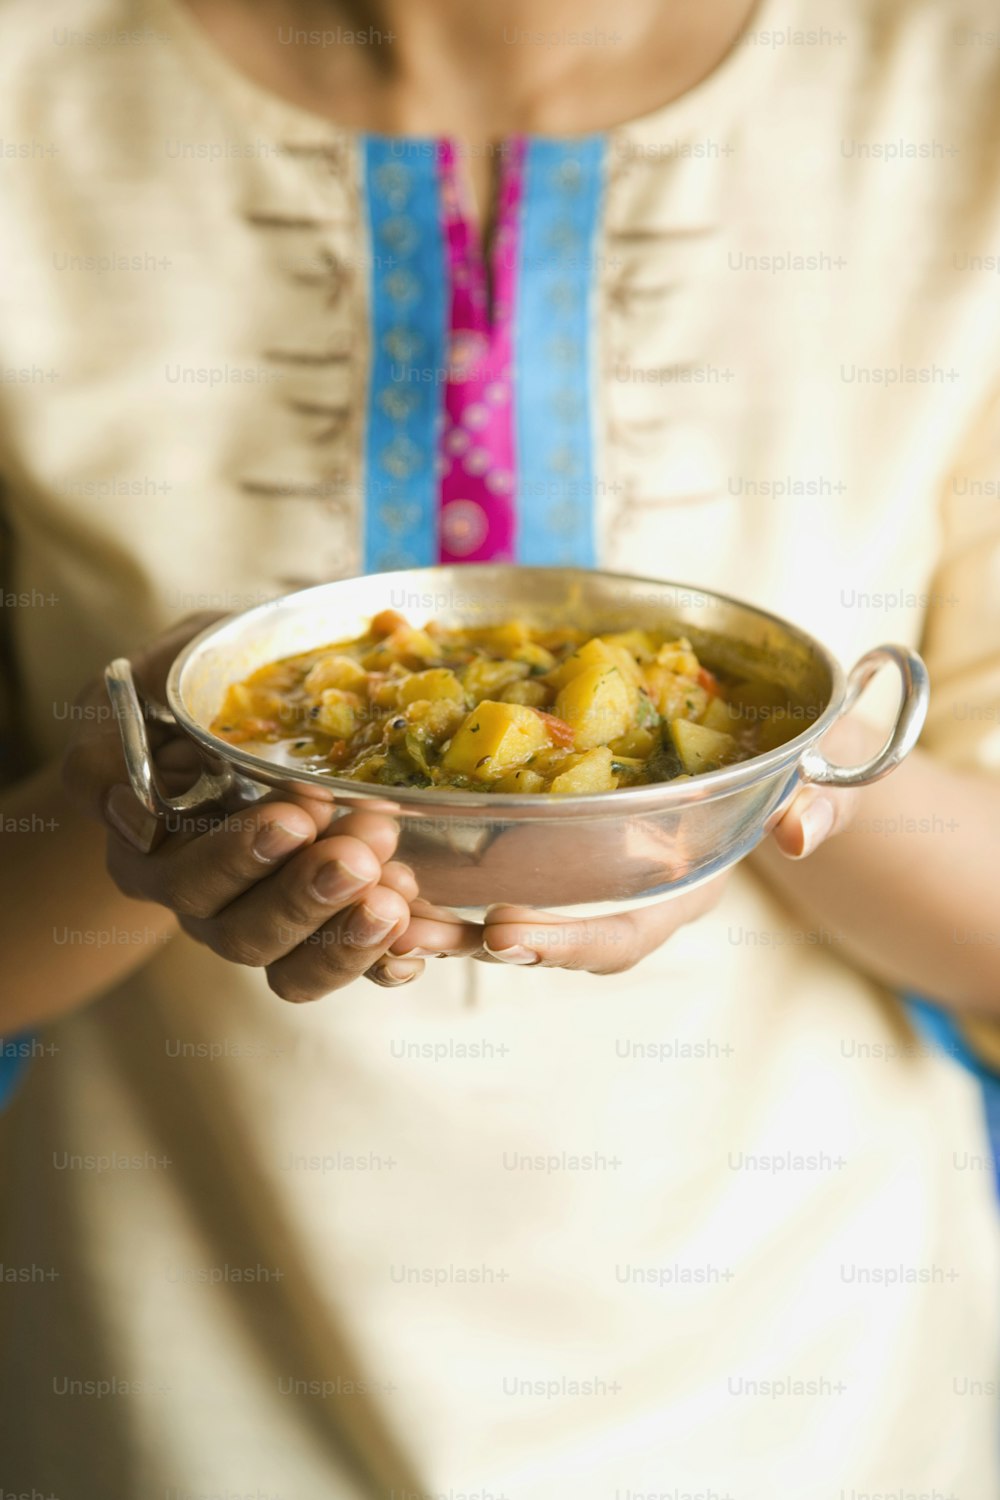 Eine Frau, die eine Schüssel mit Essen in den Händen hält